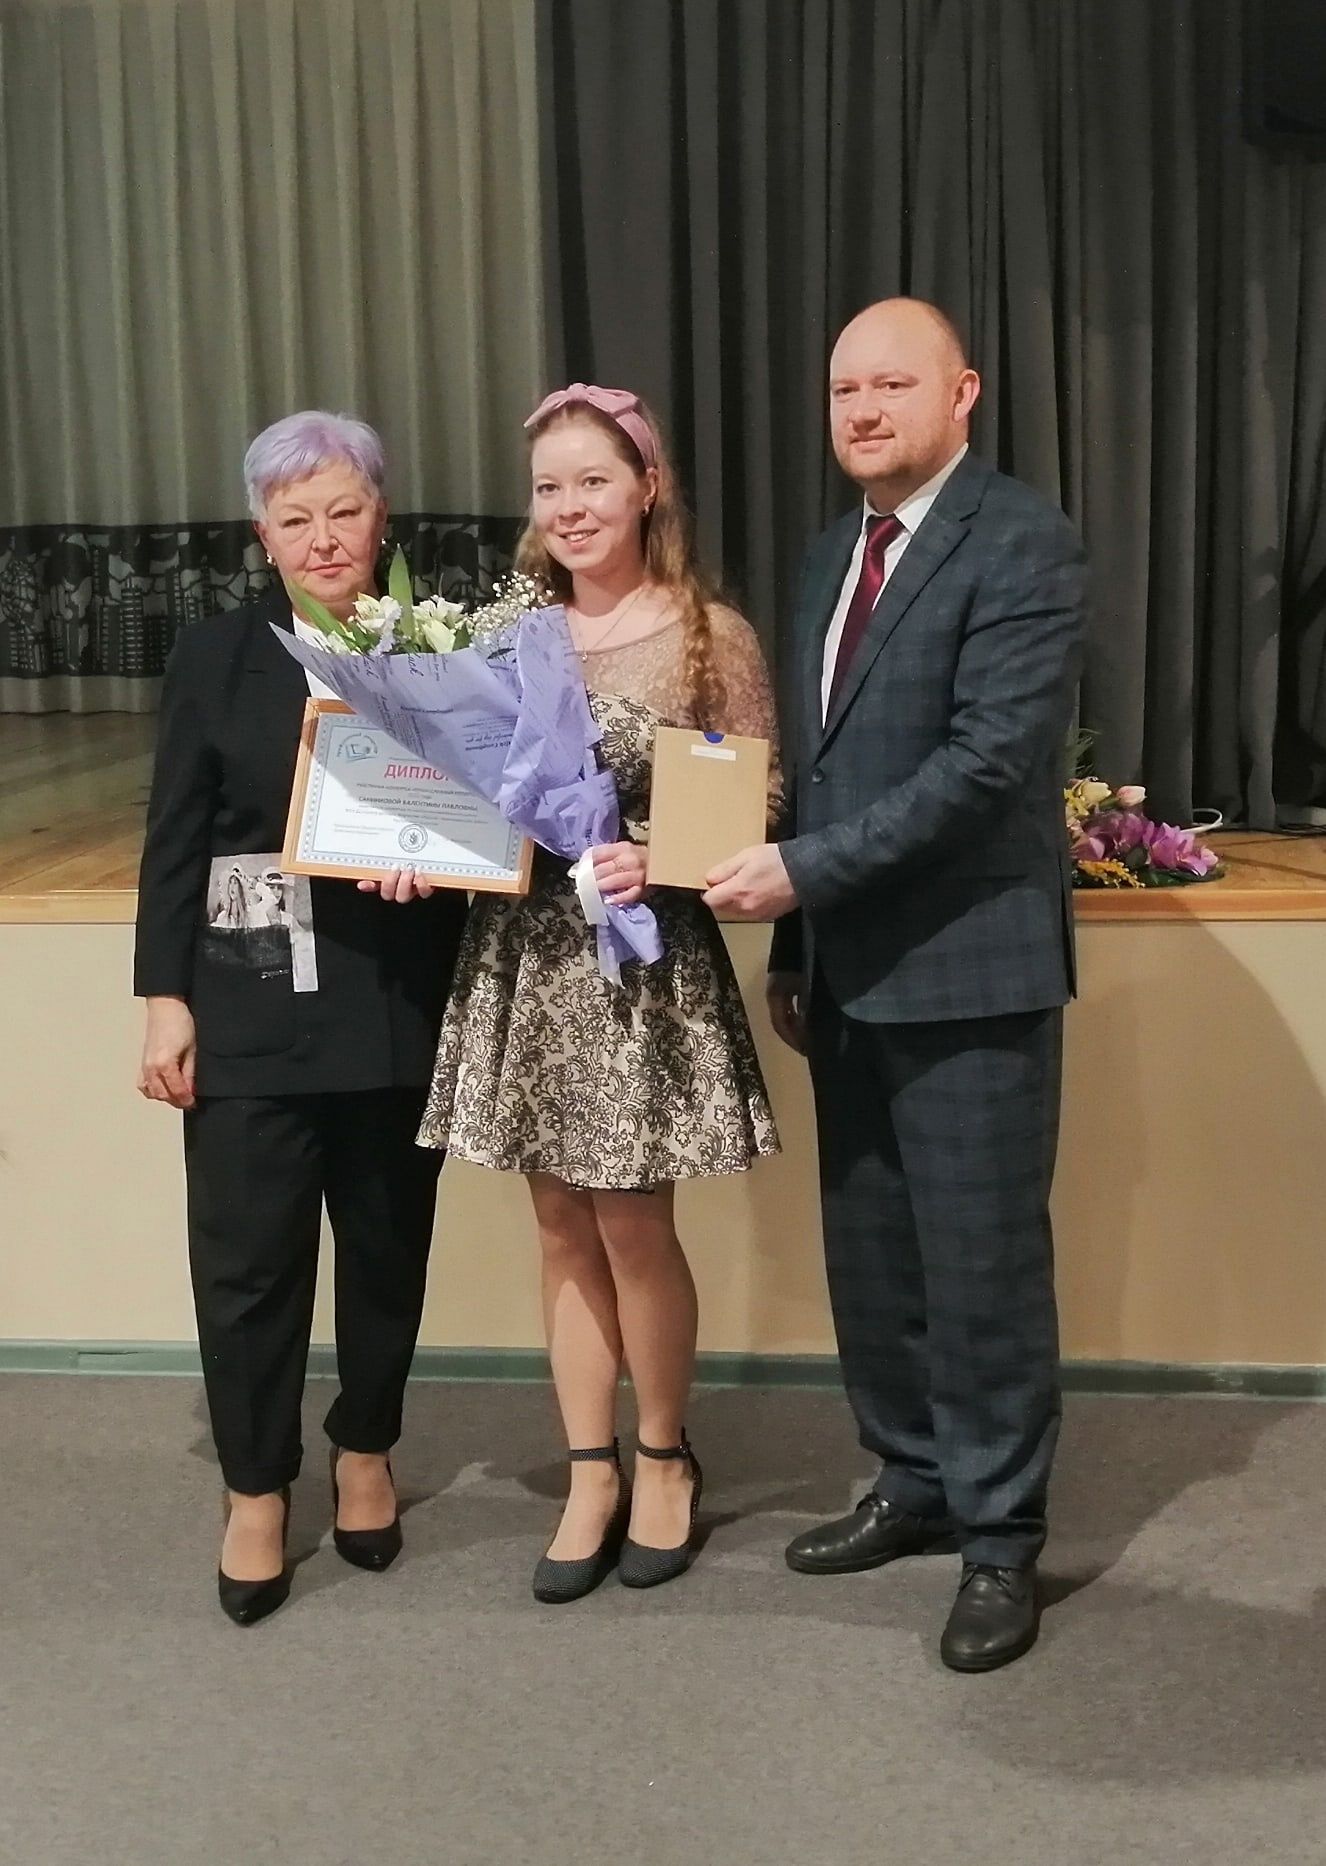 Работники ЦДТ «Радуга» награждены дипломами за участие во Всероссийском конкурсе «Профсоюзный репортёр - 2022»